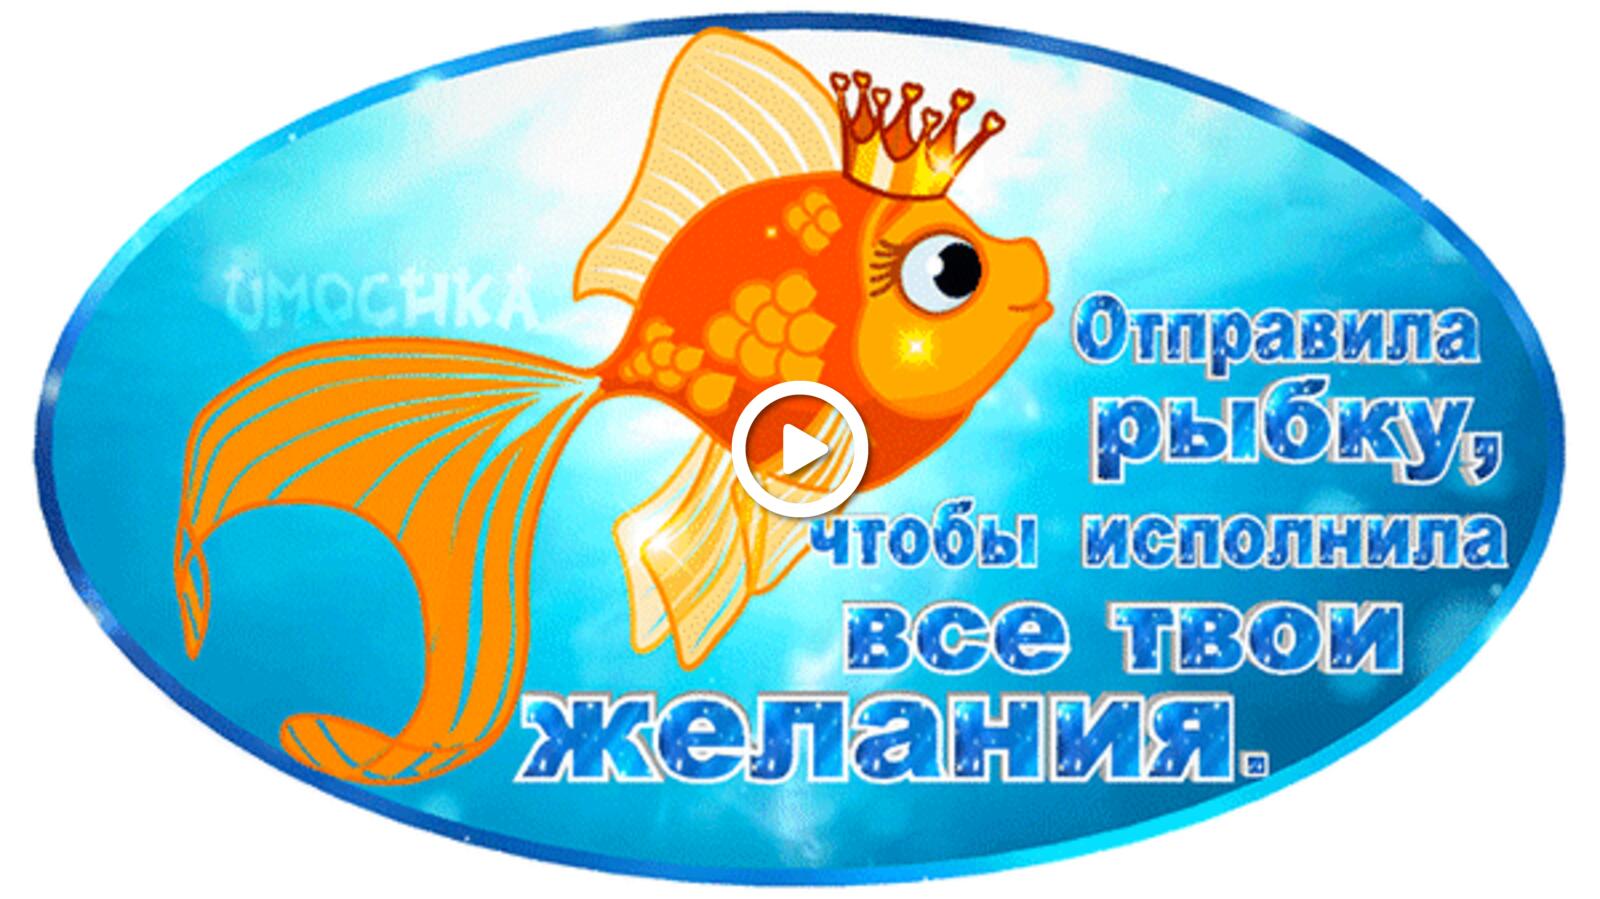 goldfish underwater world request